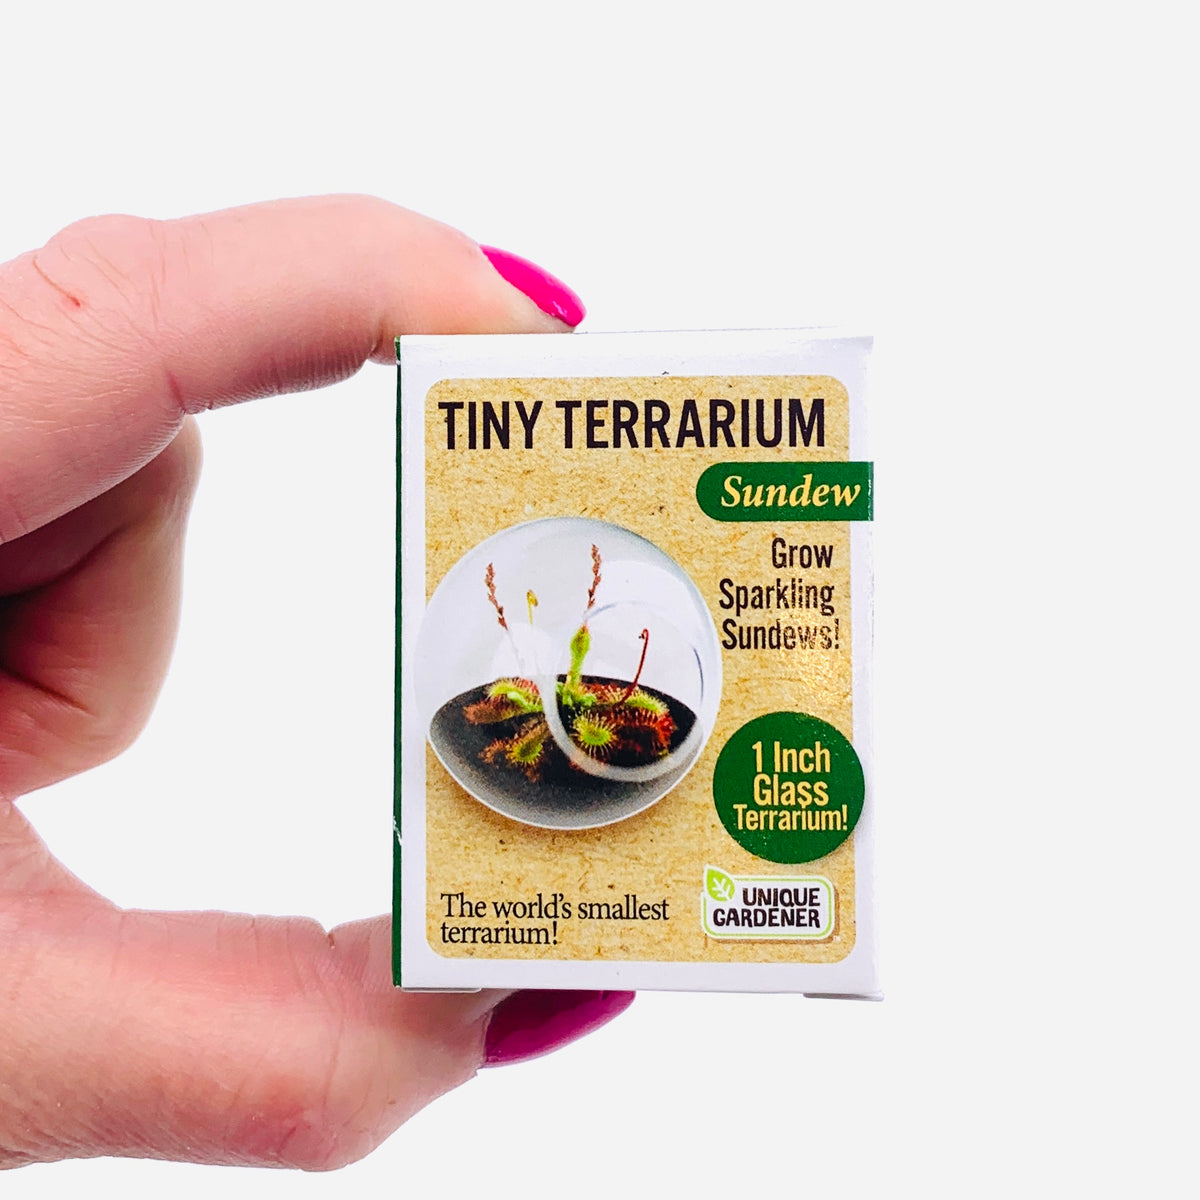 Tiny Terrarium, Sundew